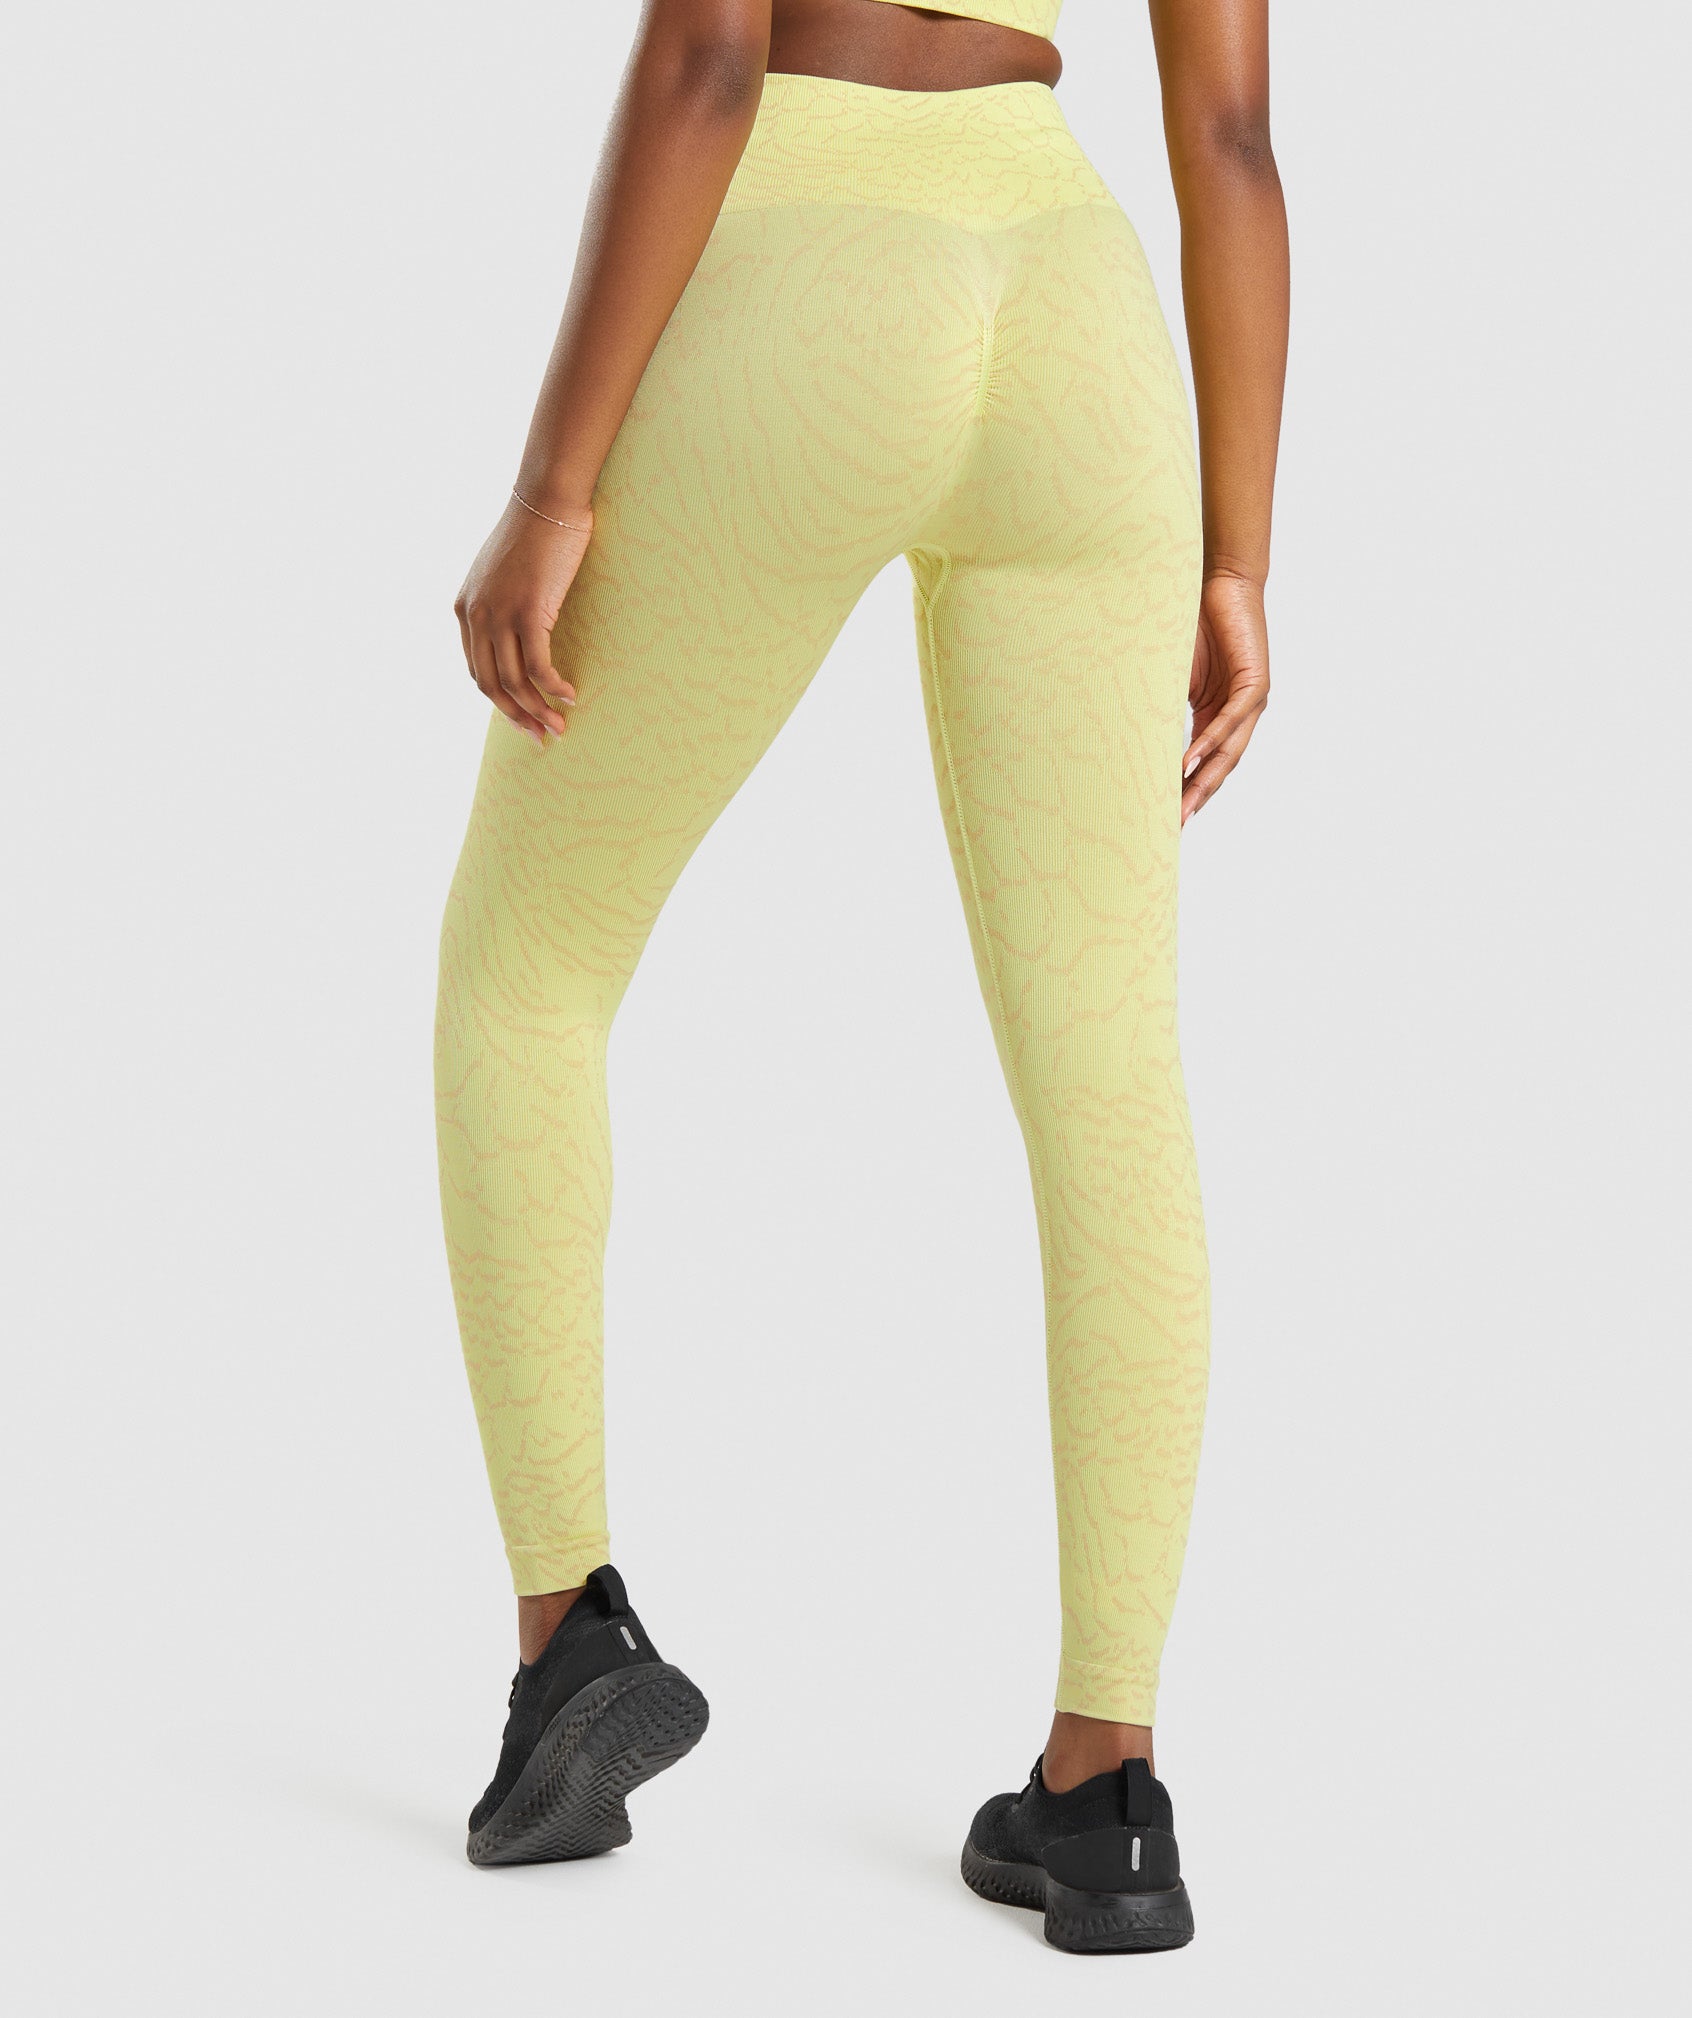 Alosoft Leggingswomen's Seamless Spandex Yoga Pants - Gymshark-inspired  Fitness Leggings